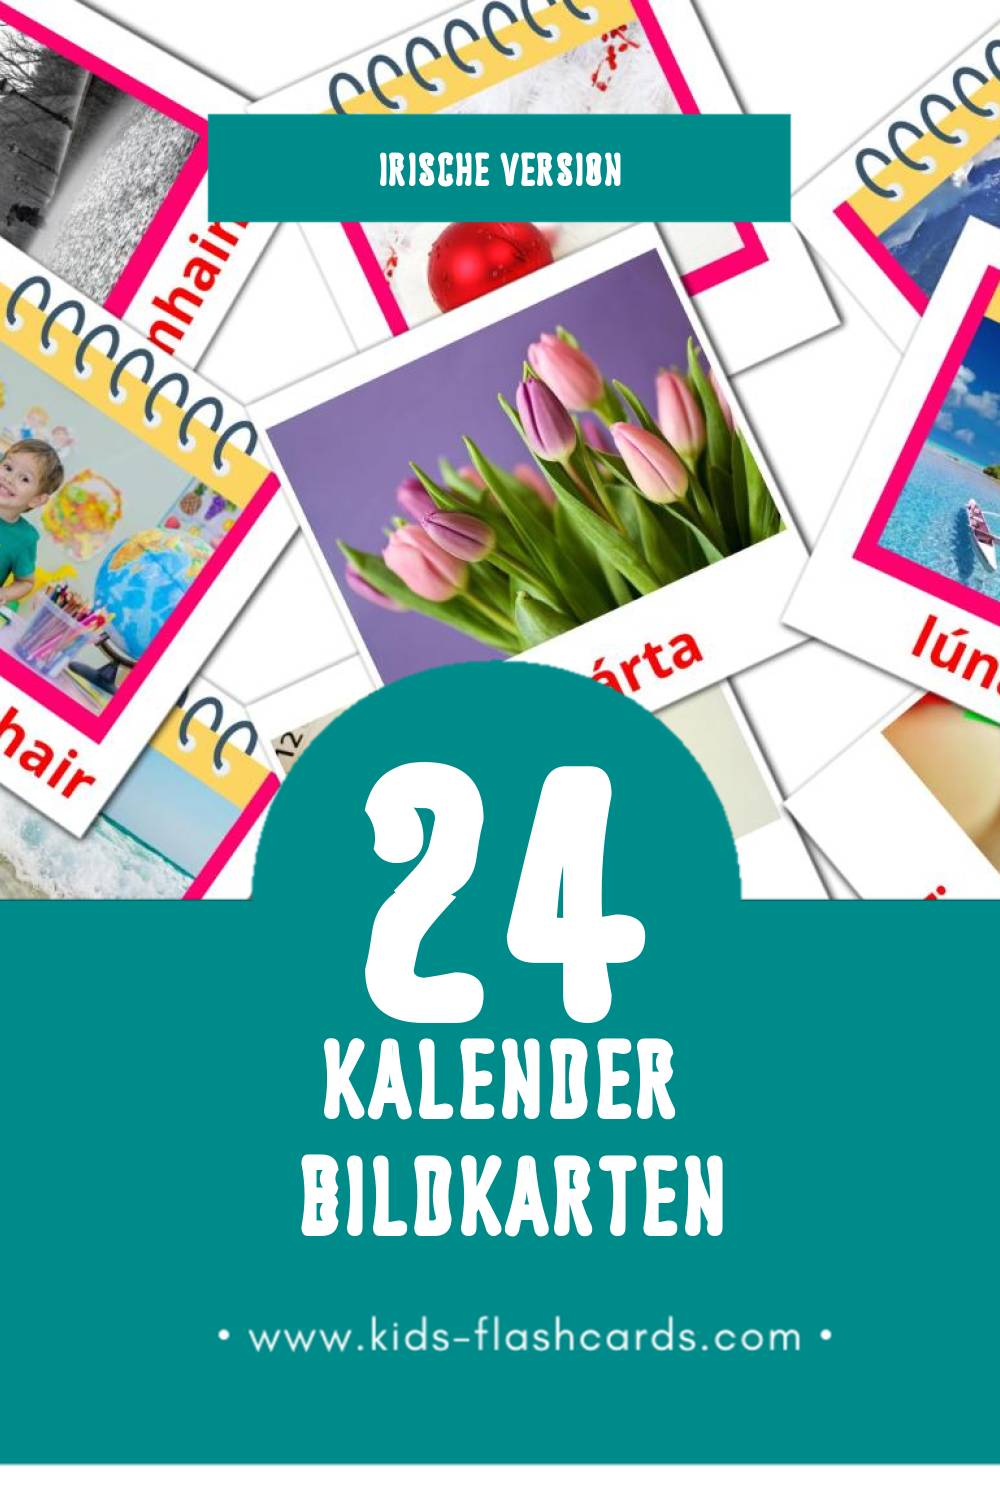 Visual Féilire Flashcards für Kleinkinder (24 Karten in Irisch)